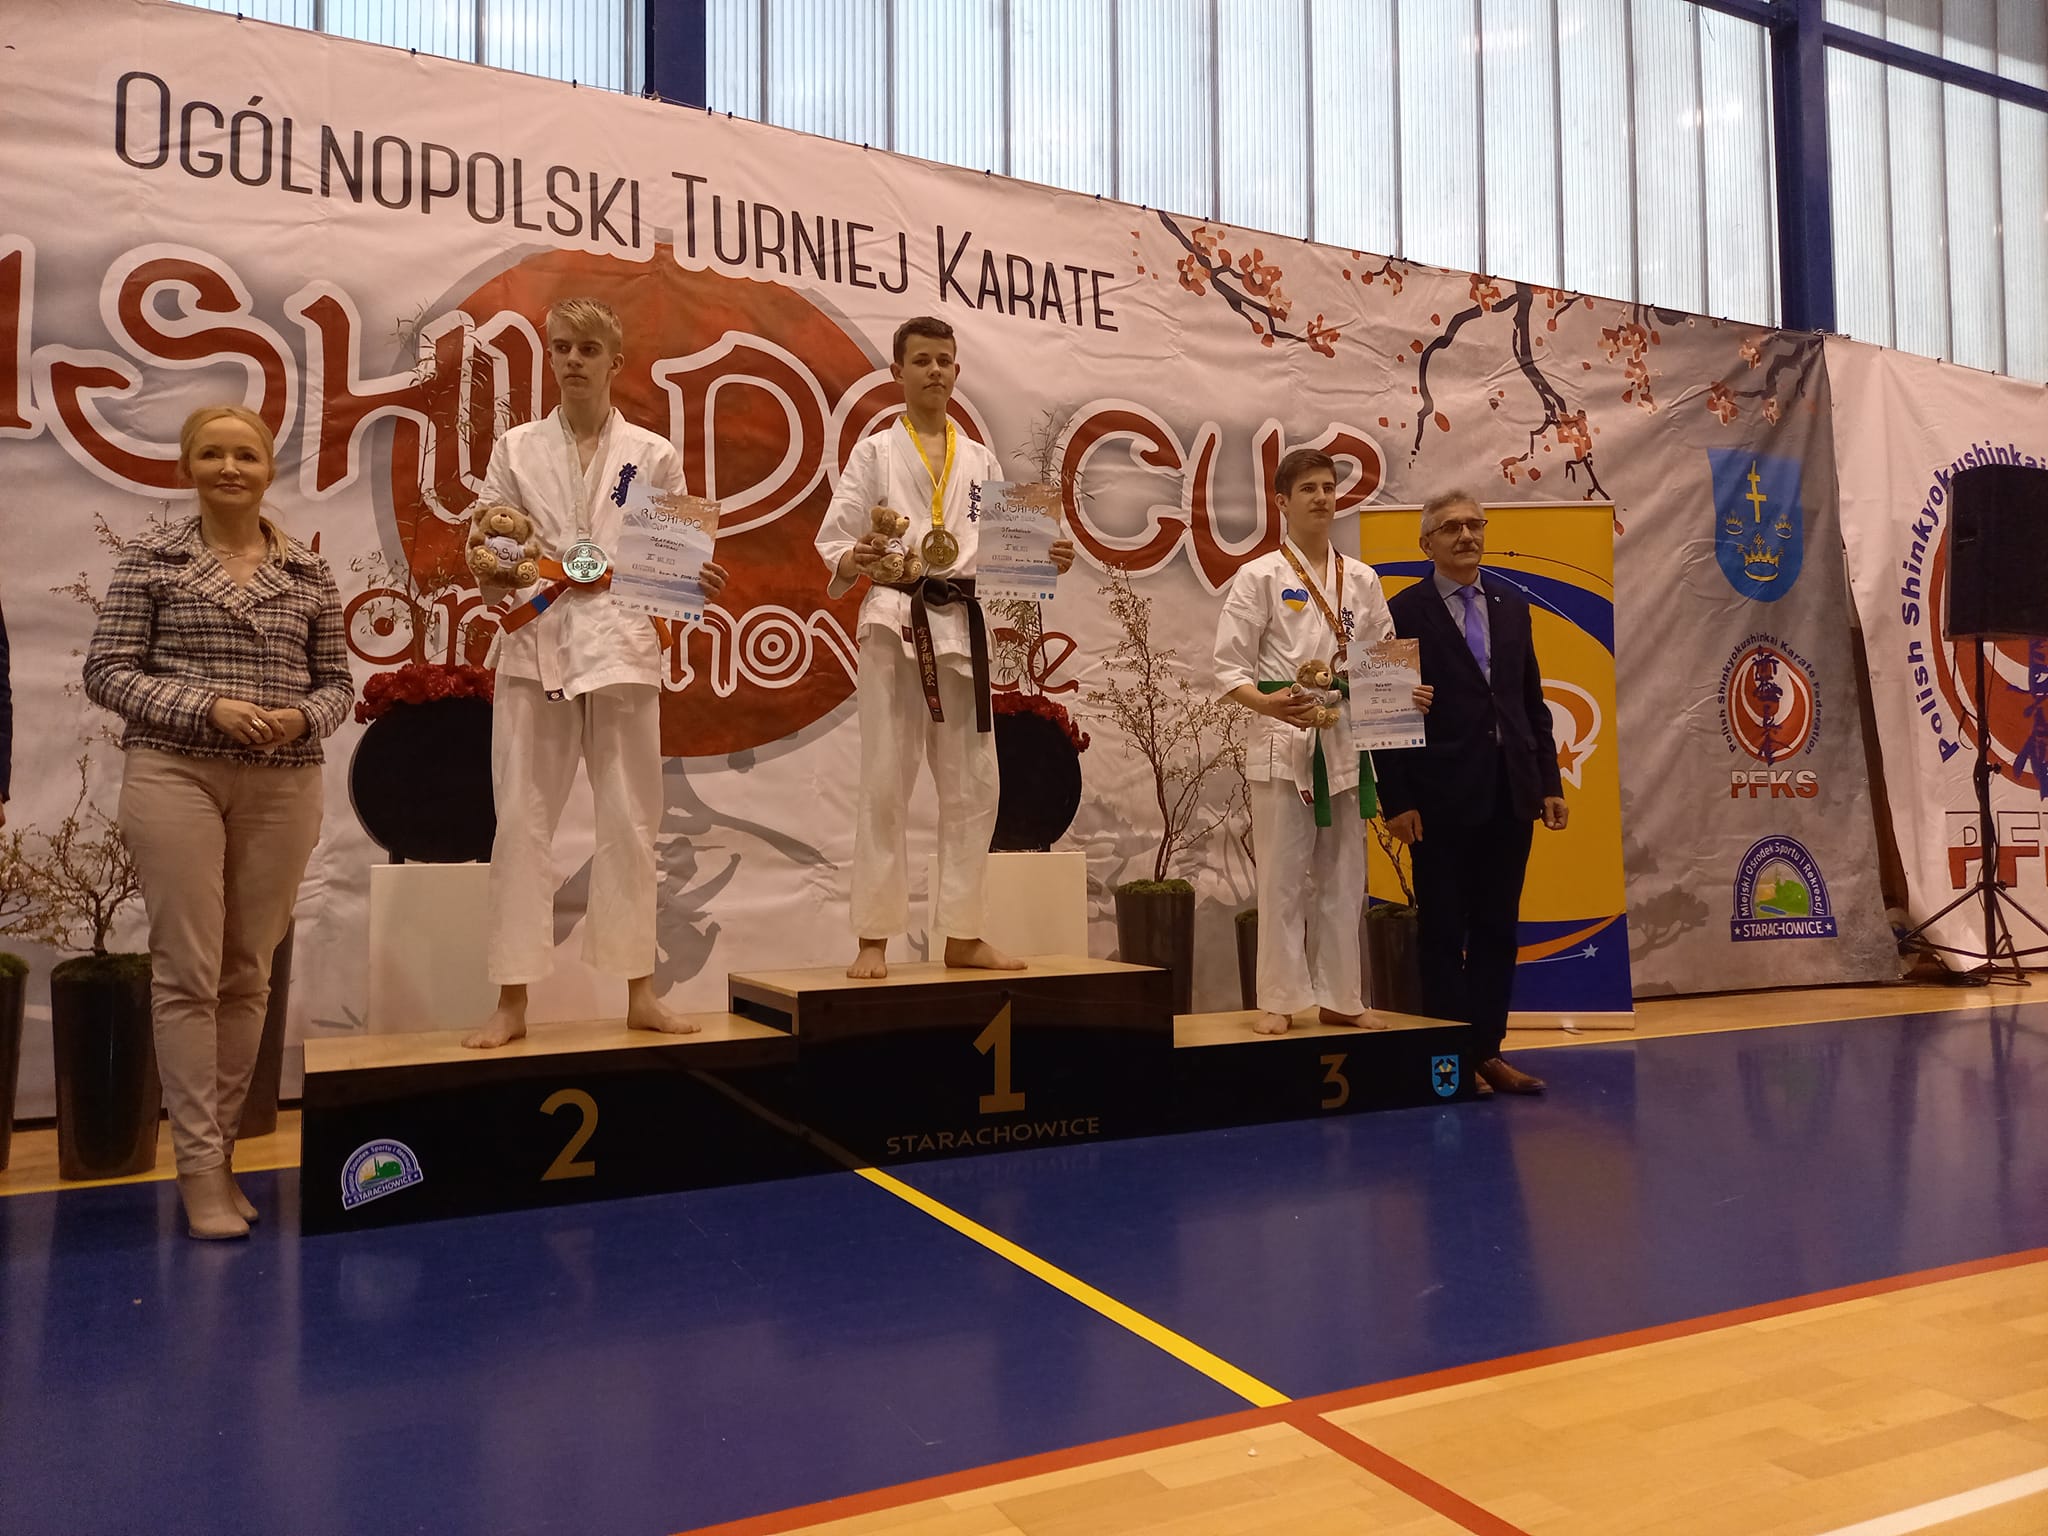 Ogólnopolski Turniej Karate Bushio – Do – Cup Starachowice